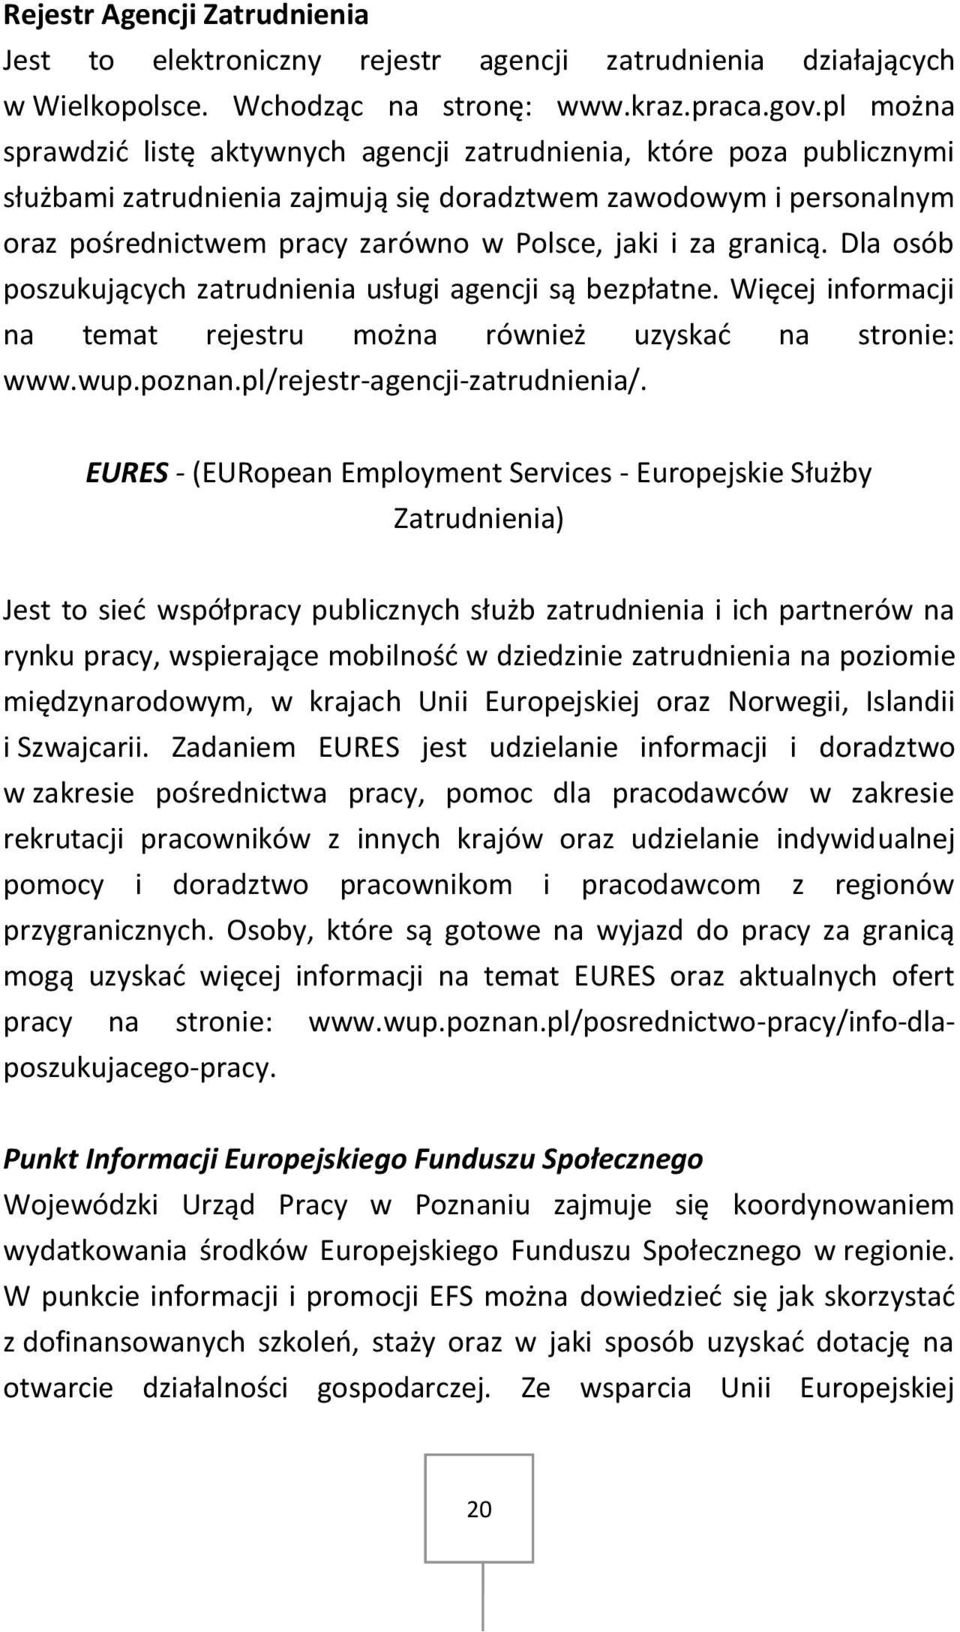 za granicą. Dla osób poszukujących zatrudnienia usługi agencji są bezpłatne. Więcej informacji na temat rejestru można również uzyskać na stronie: www.wup.poznan.pl/rejestr-agencji-zatrudnienia/.